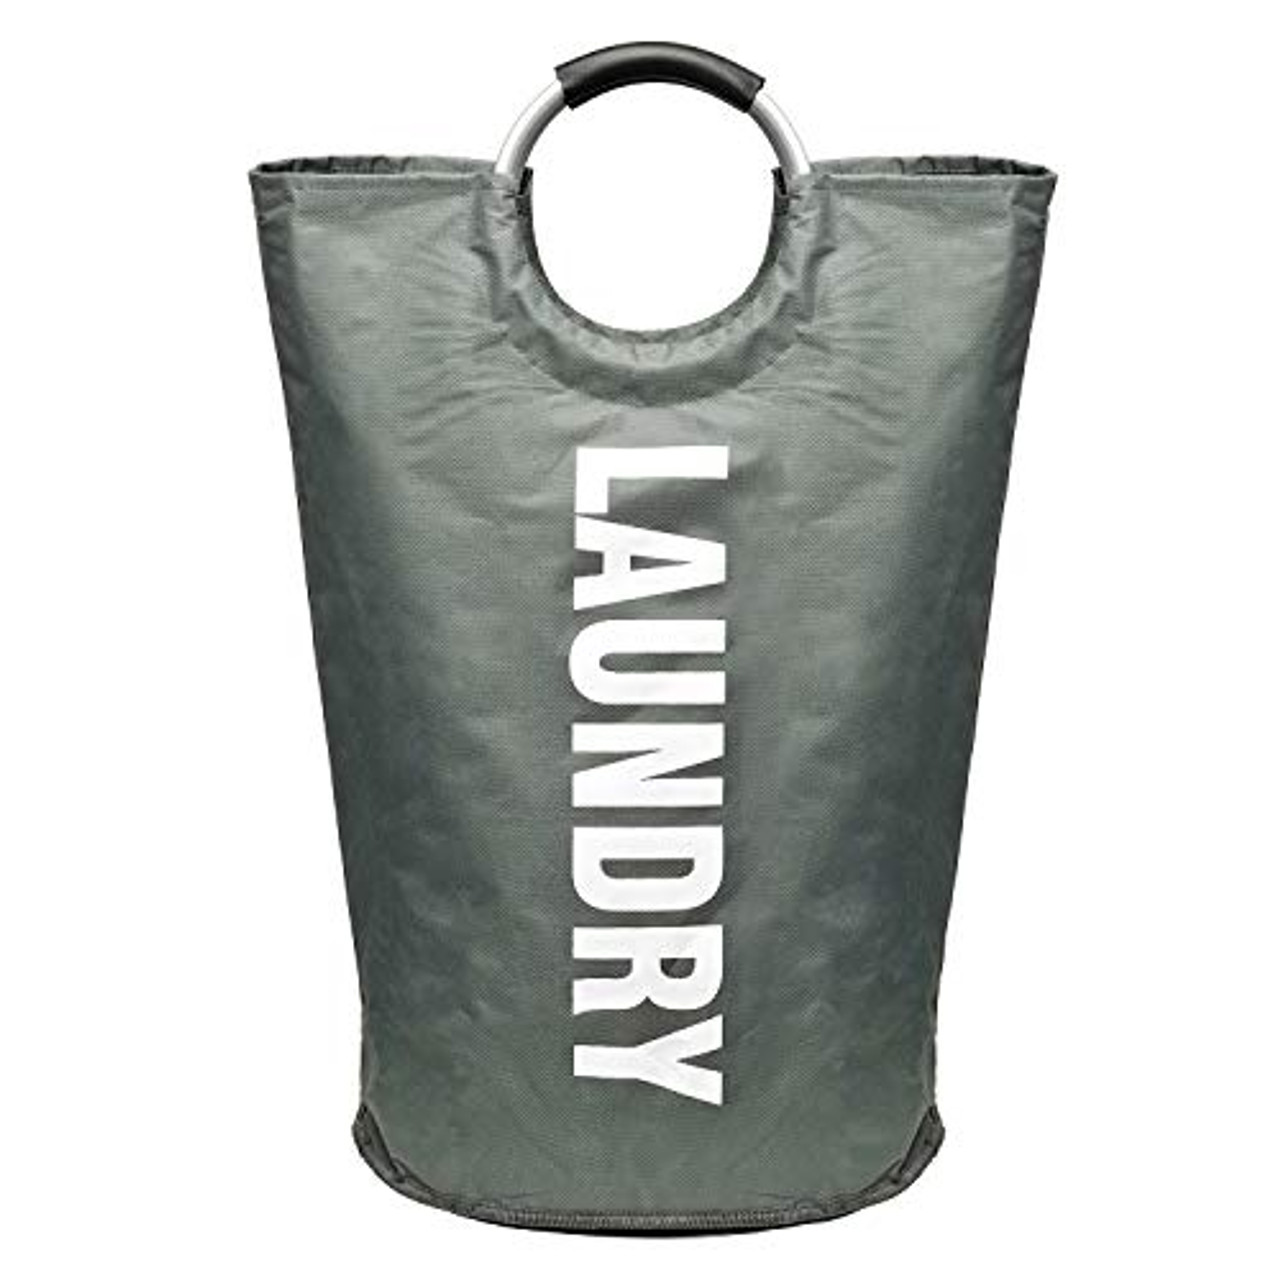 New Large Folding Laundry Basket Bag Washing Fabric Collapsible Storage Hamper 